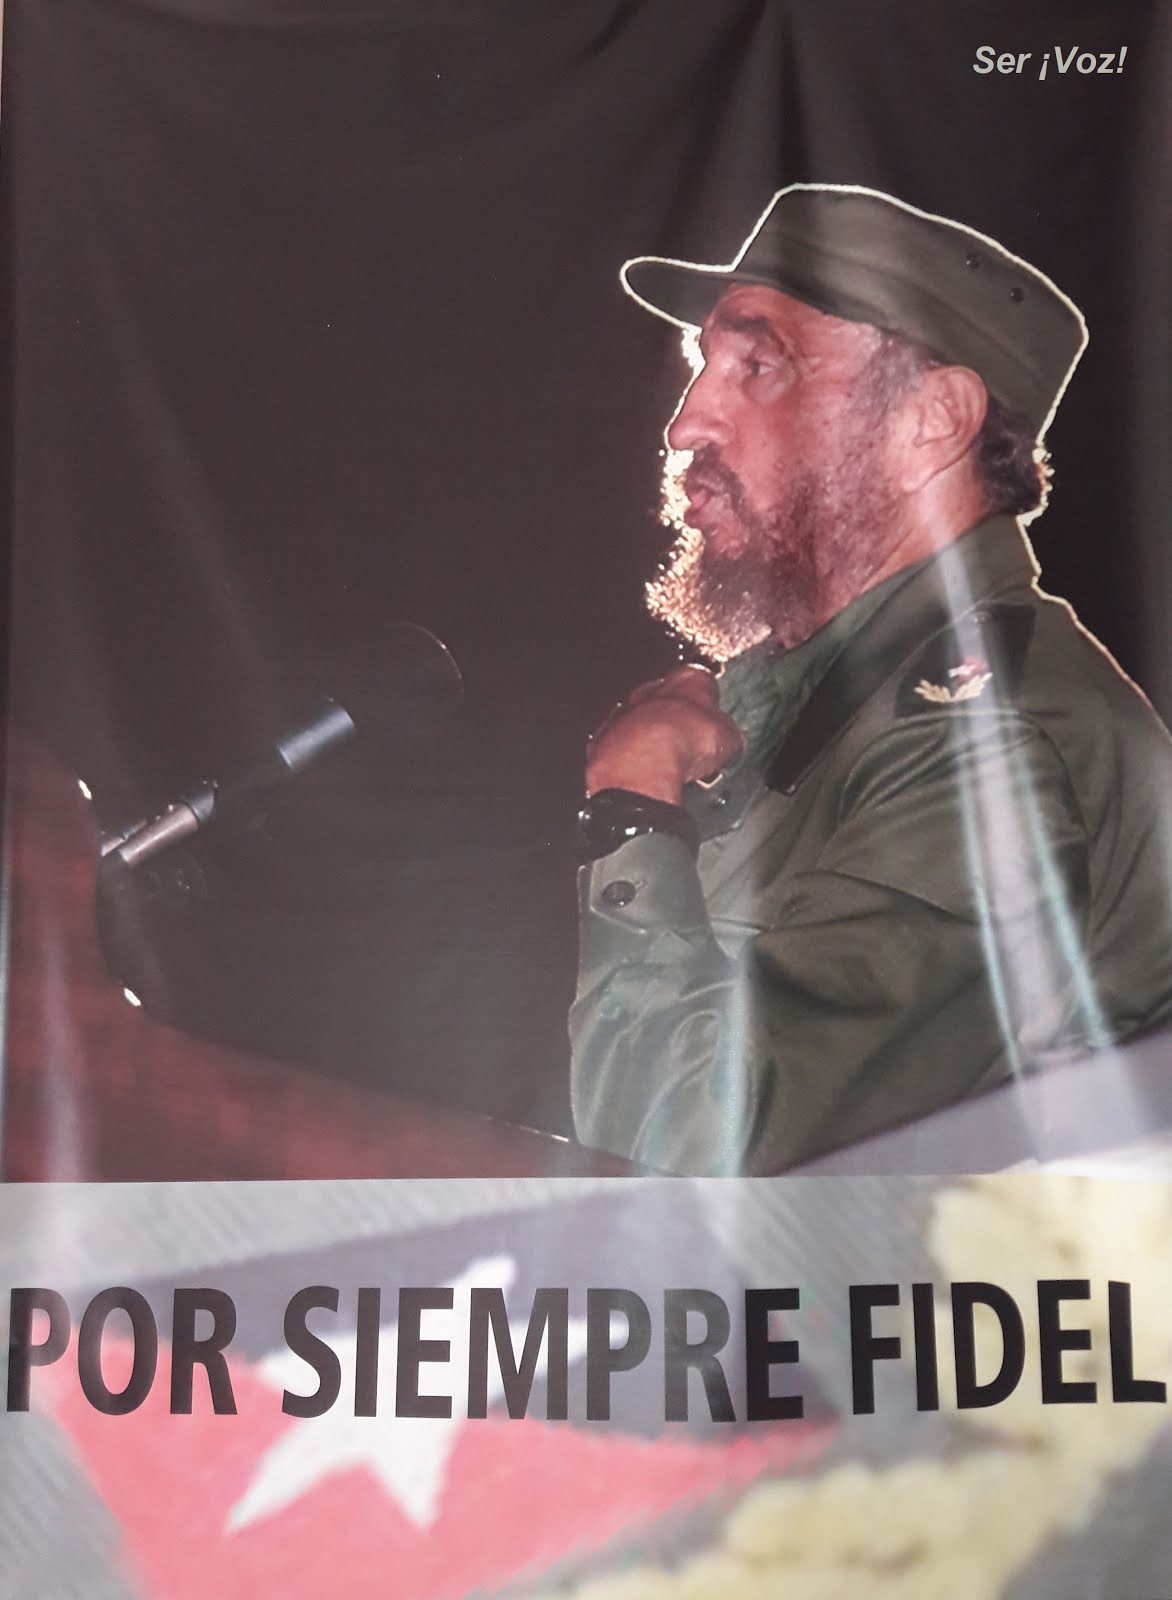 ¡Hasta siempre, Comandante Fidel Castro!